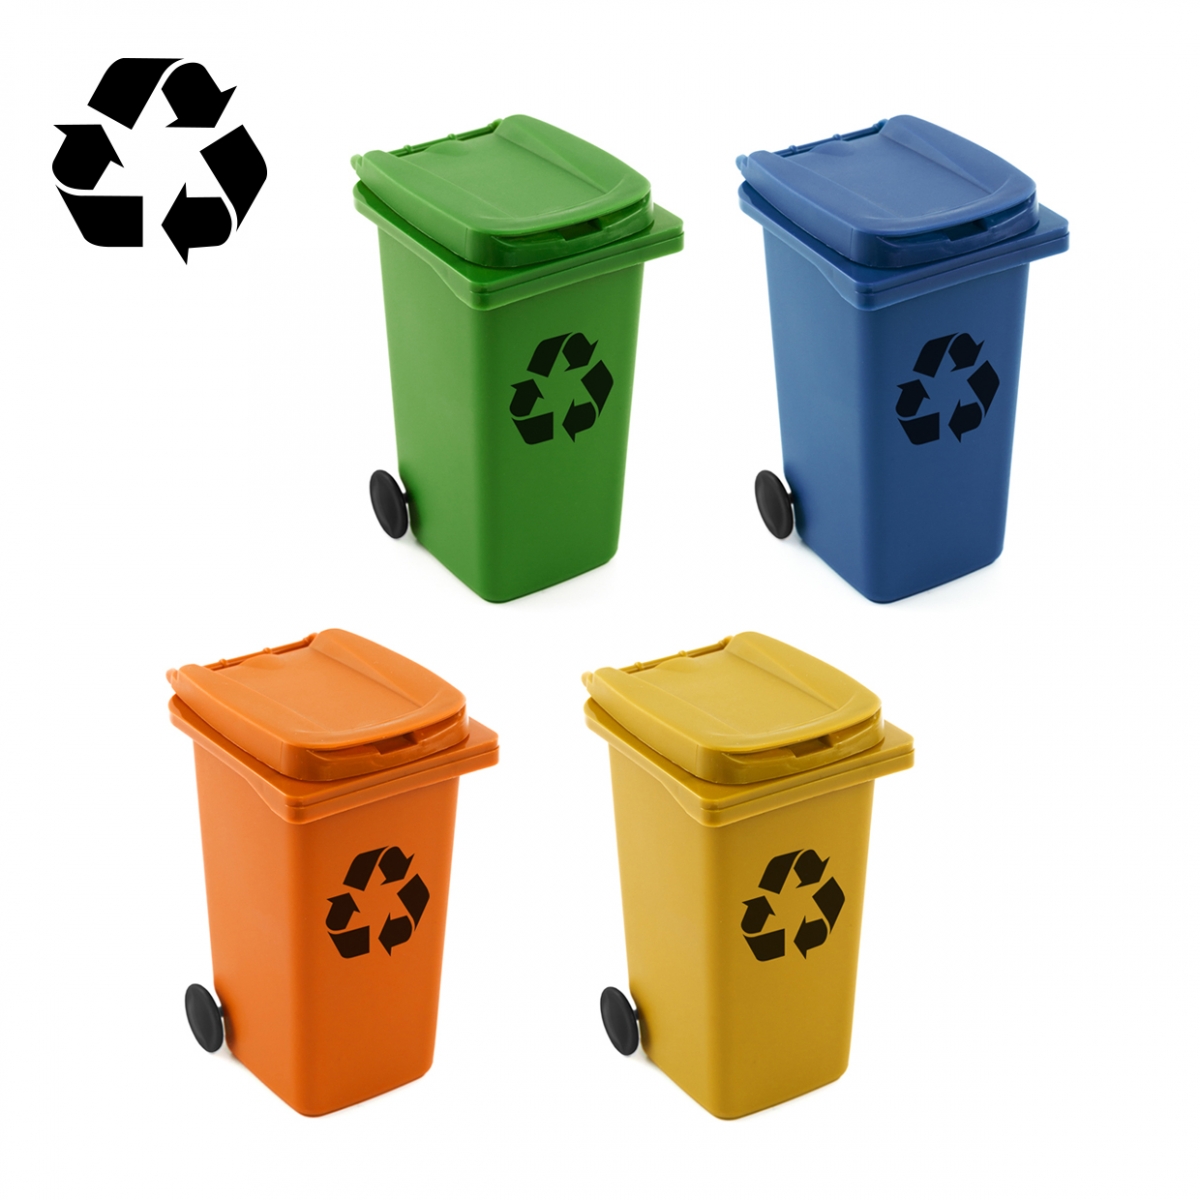 Imagen genérica del concepto reciclaje